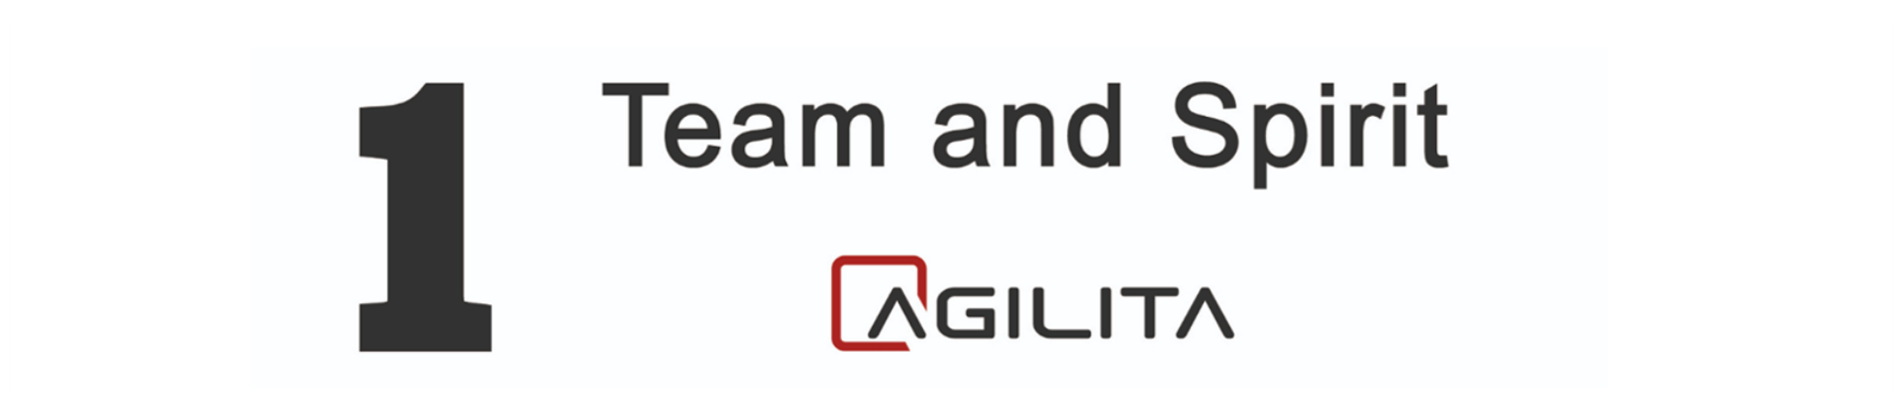 AGILITA  AG logo